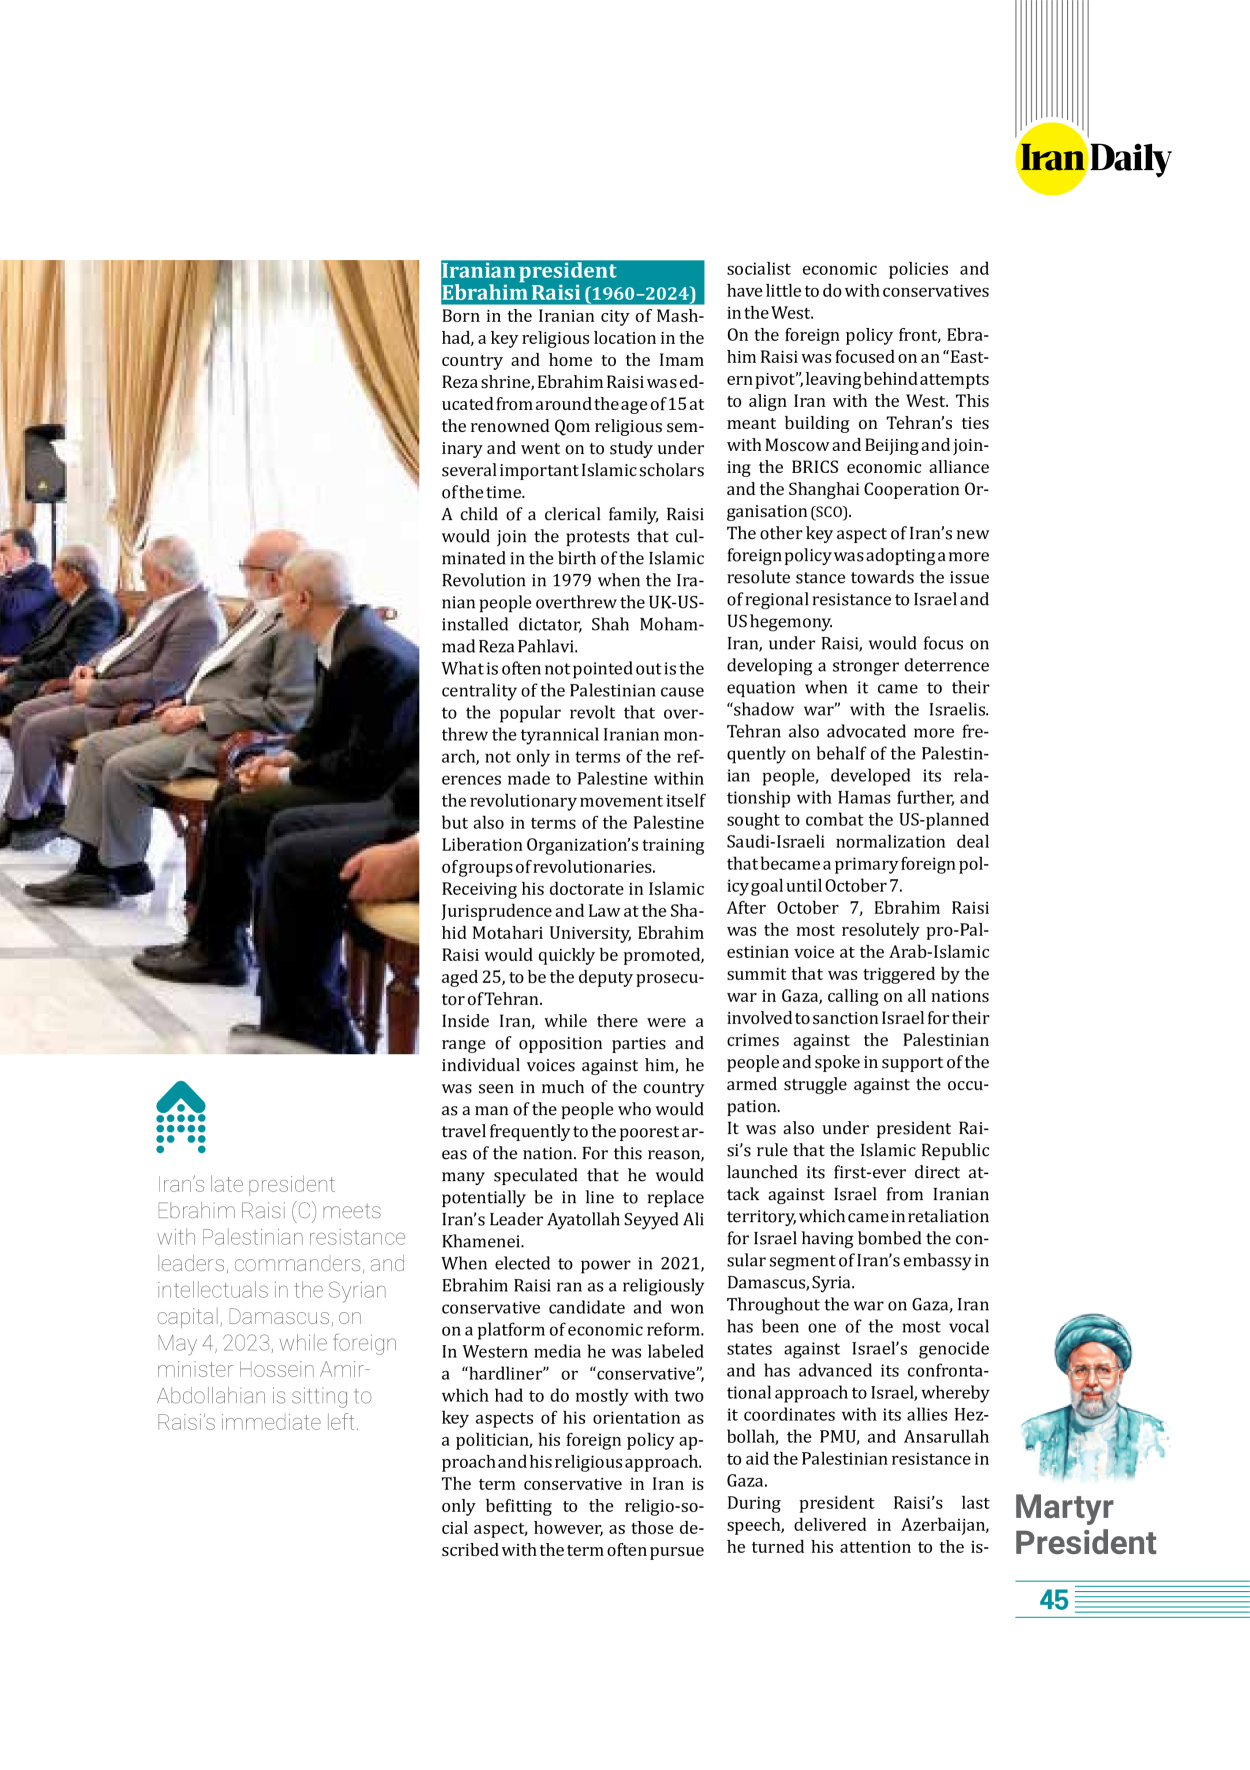 روزنامه ایران - ویژه نامه وِزه نامه چهلم شهید رییسی( انگلیسی) - ۱۷ تیر ۱۴۰۳ - صفحه ۴۵